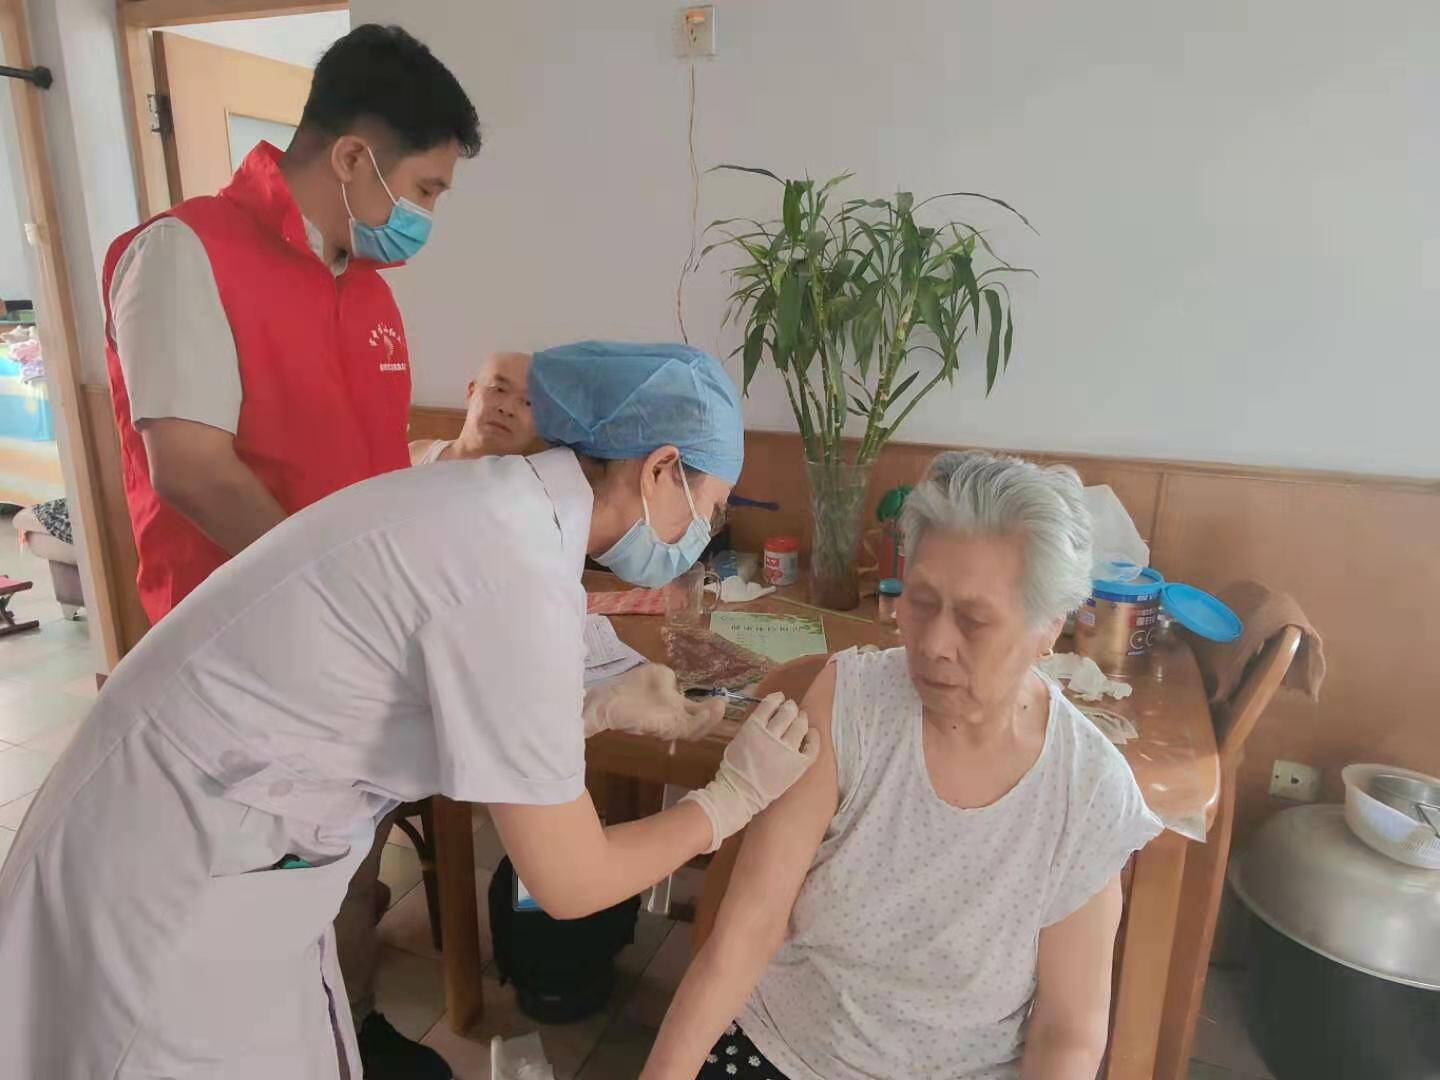 枣庄市中区龙山路街道为老年人疫苗接种提供“一条龙”服务